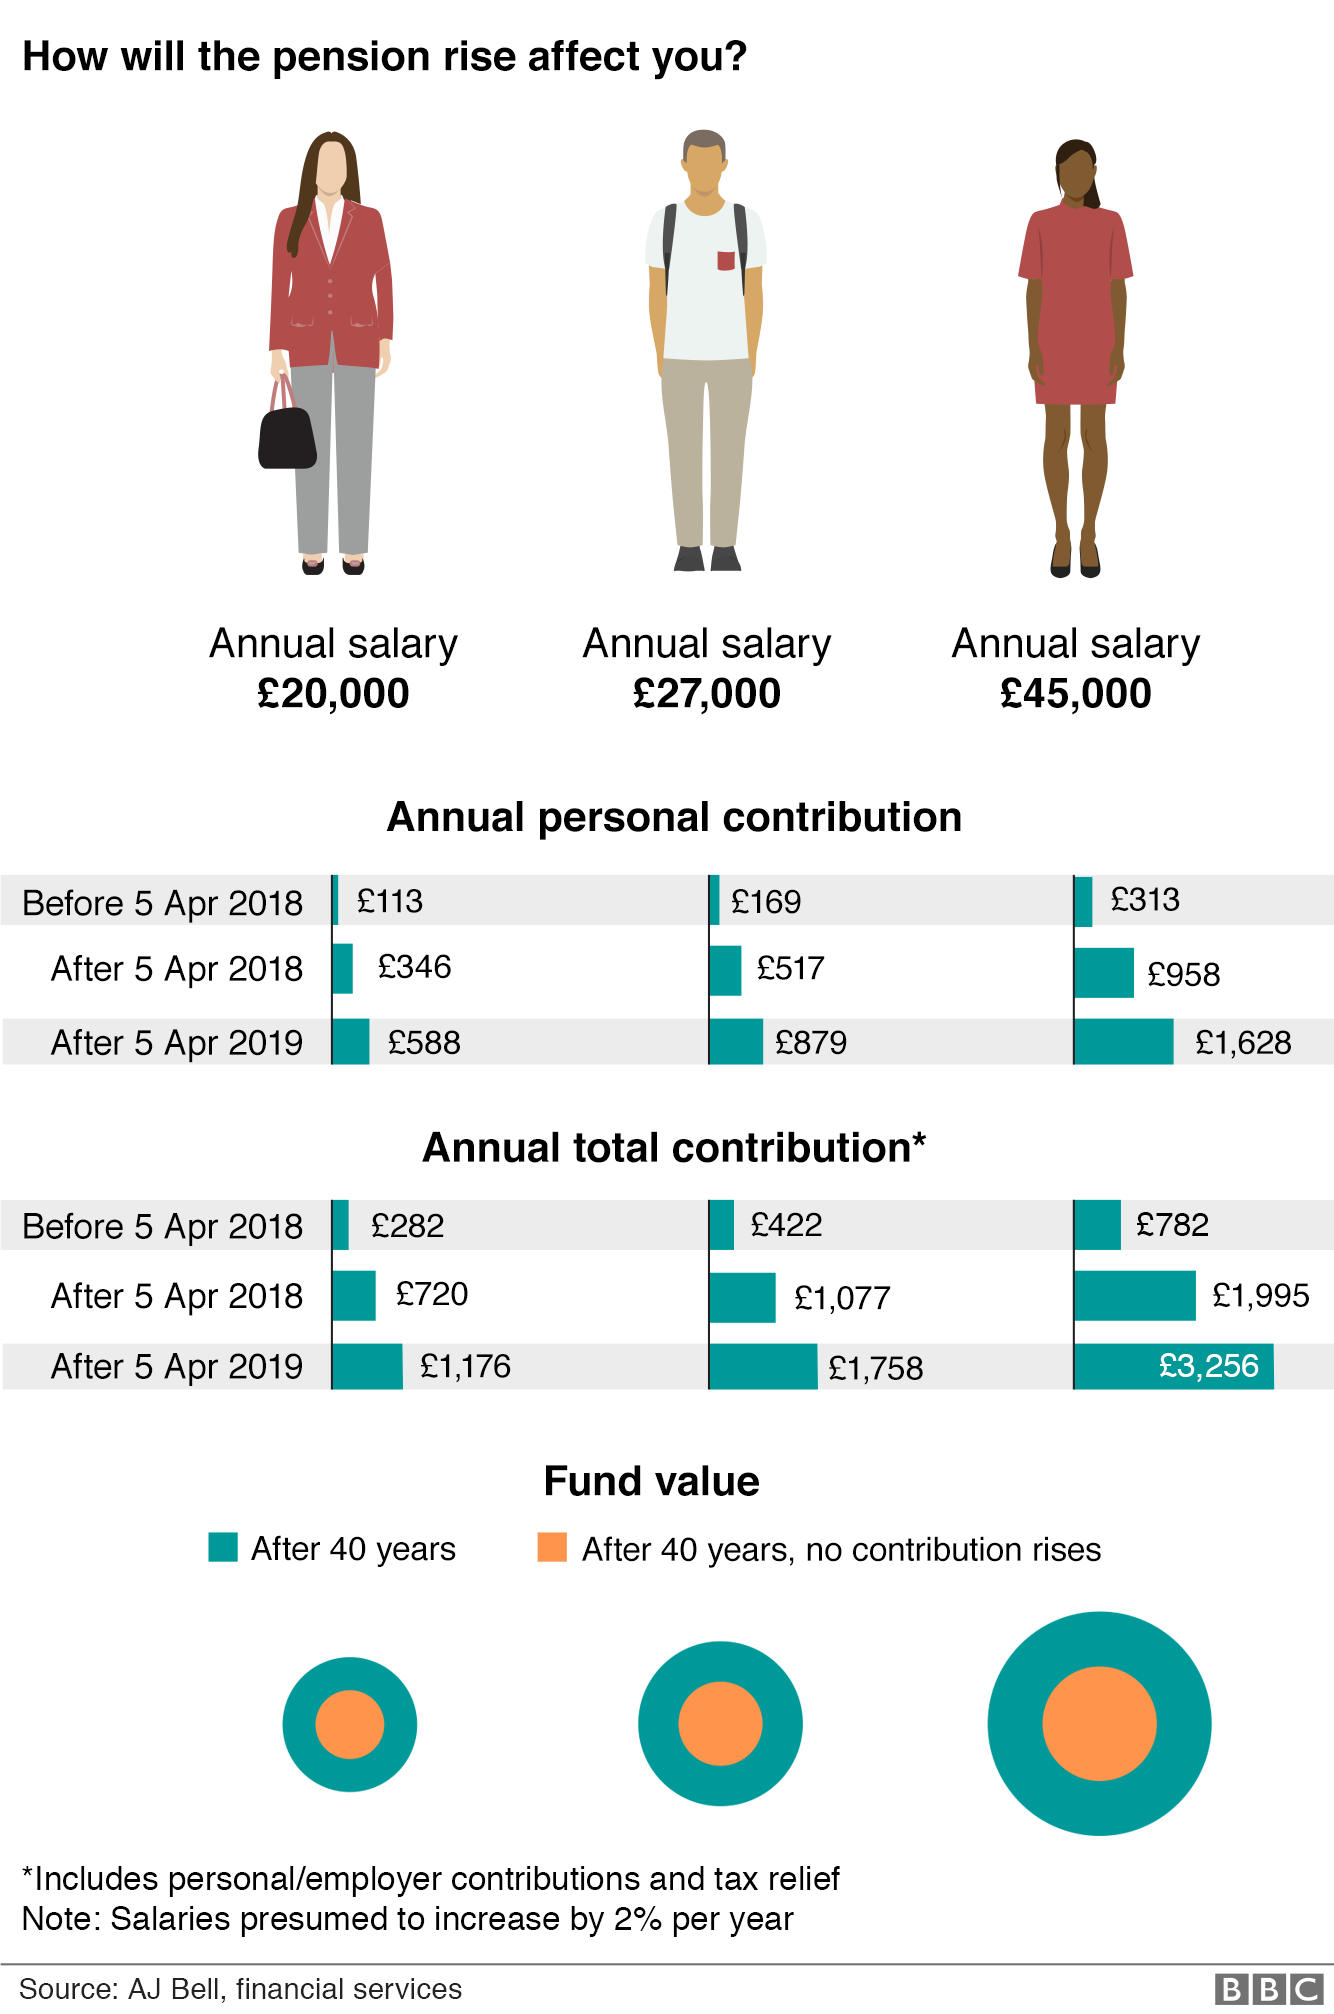 Графическое изображение увеличения взносов в пенсии по трем зарплатам: 20 000 фунтов стерлингов, 27 000 фунтов стерлингов и 45 000 фунтов стерлингов